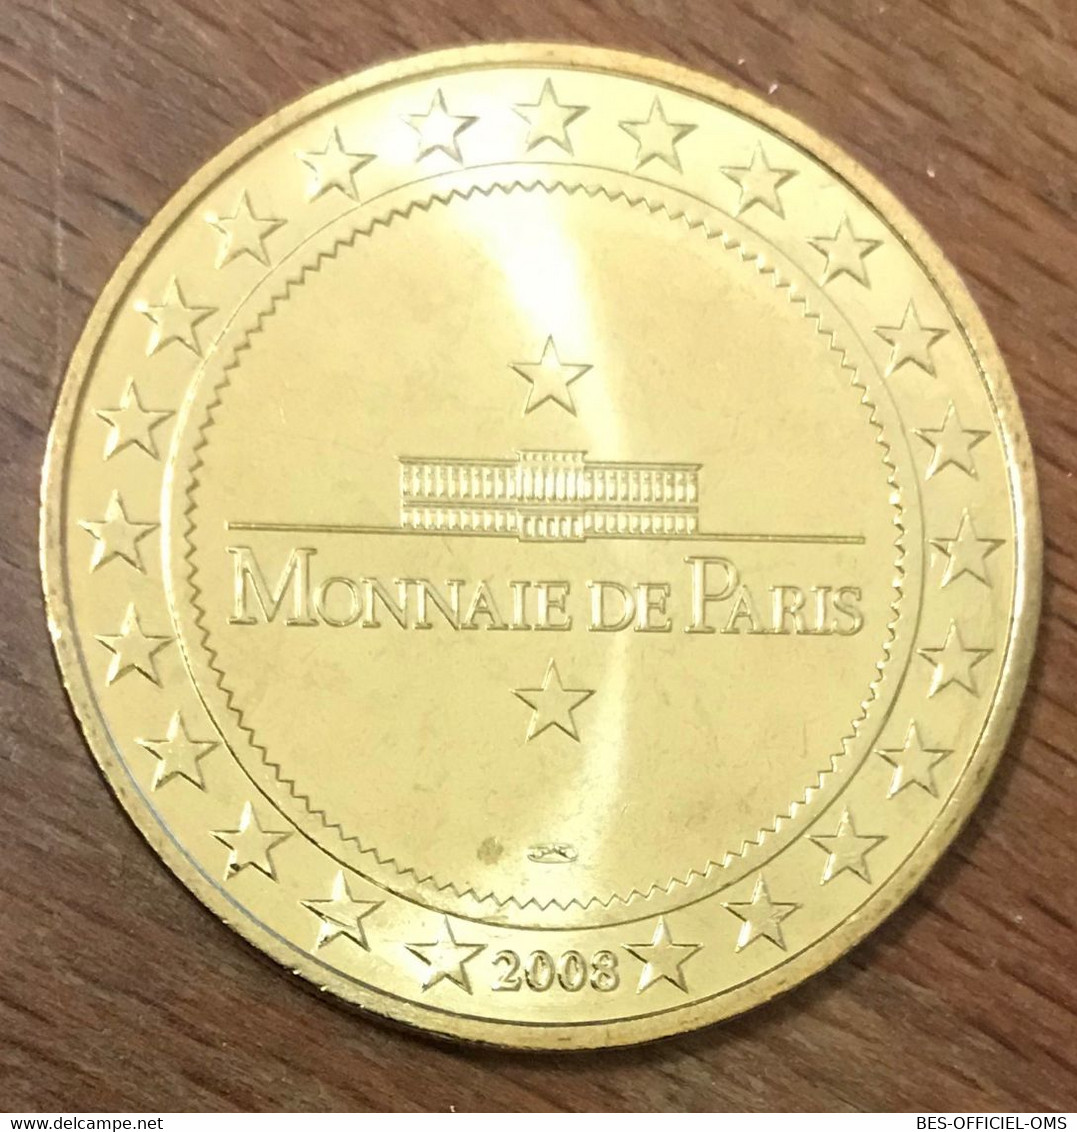 13 MARSEILLE TRAMWAY N°3 MDP 2008 MÉDAILLE SOUVENIR MONNAIE DE PARIS JETON TOURISTIQUE MEDALS COINS TOKENS - 2008